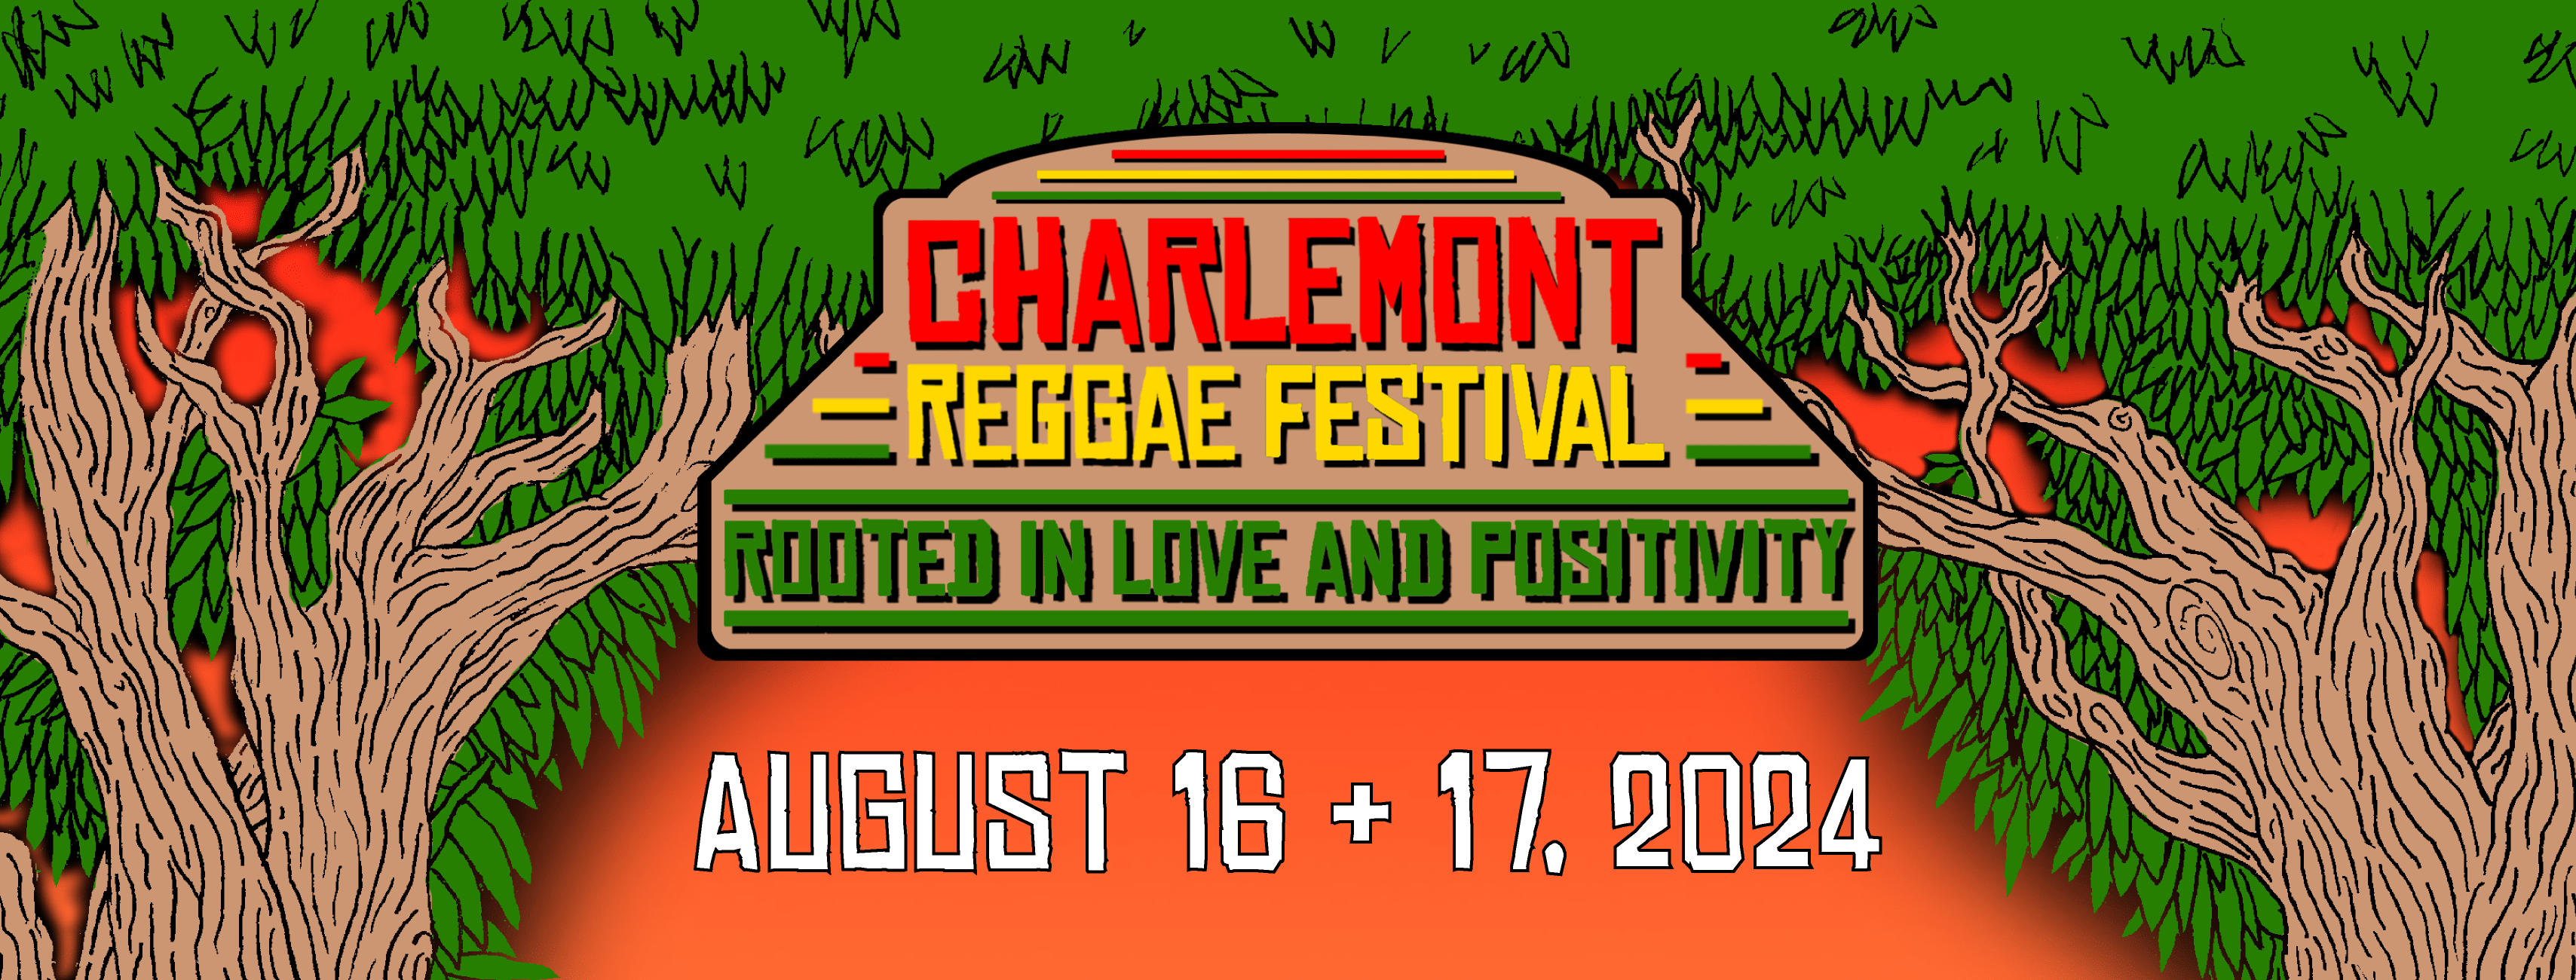 Charlemont Reggae Festival!